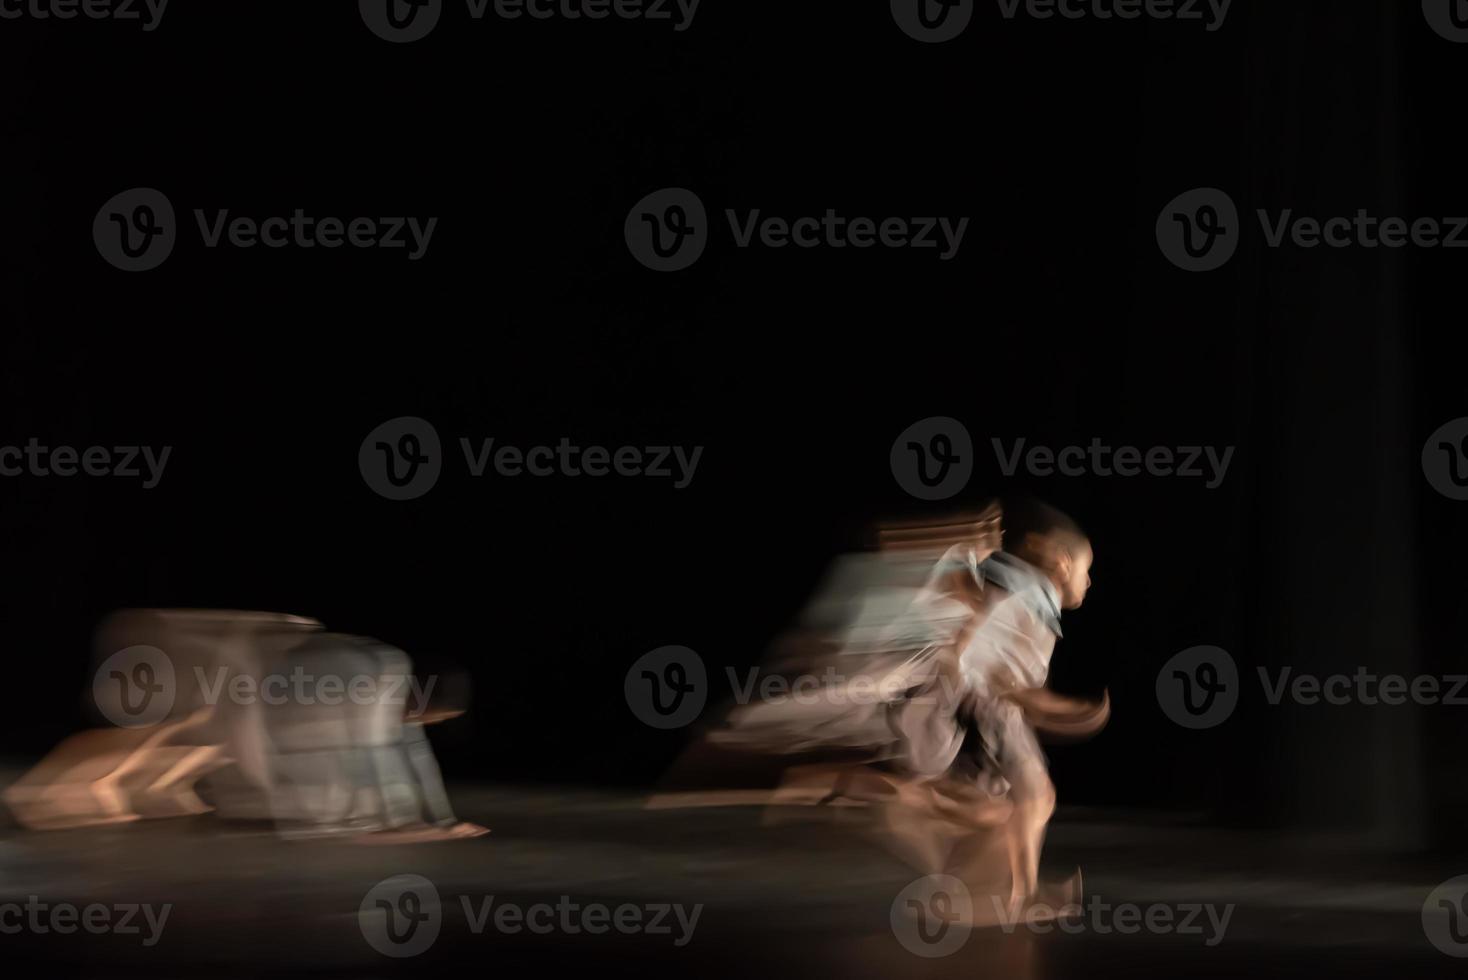 die abstrakte Bewegung des Tanzes foto